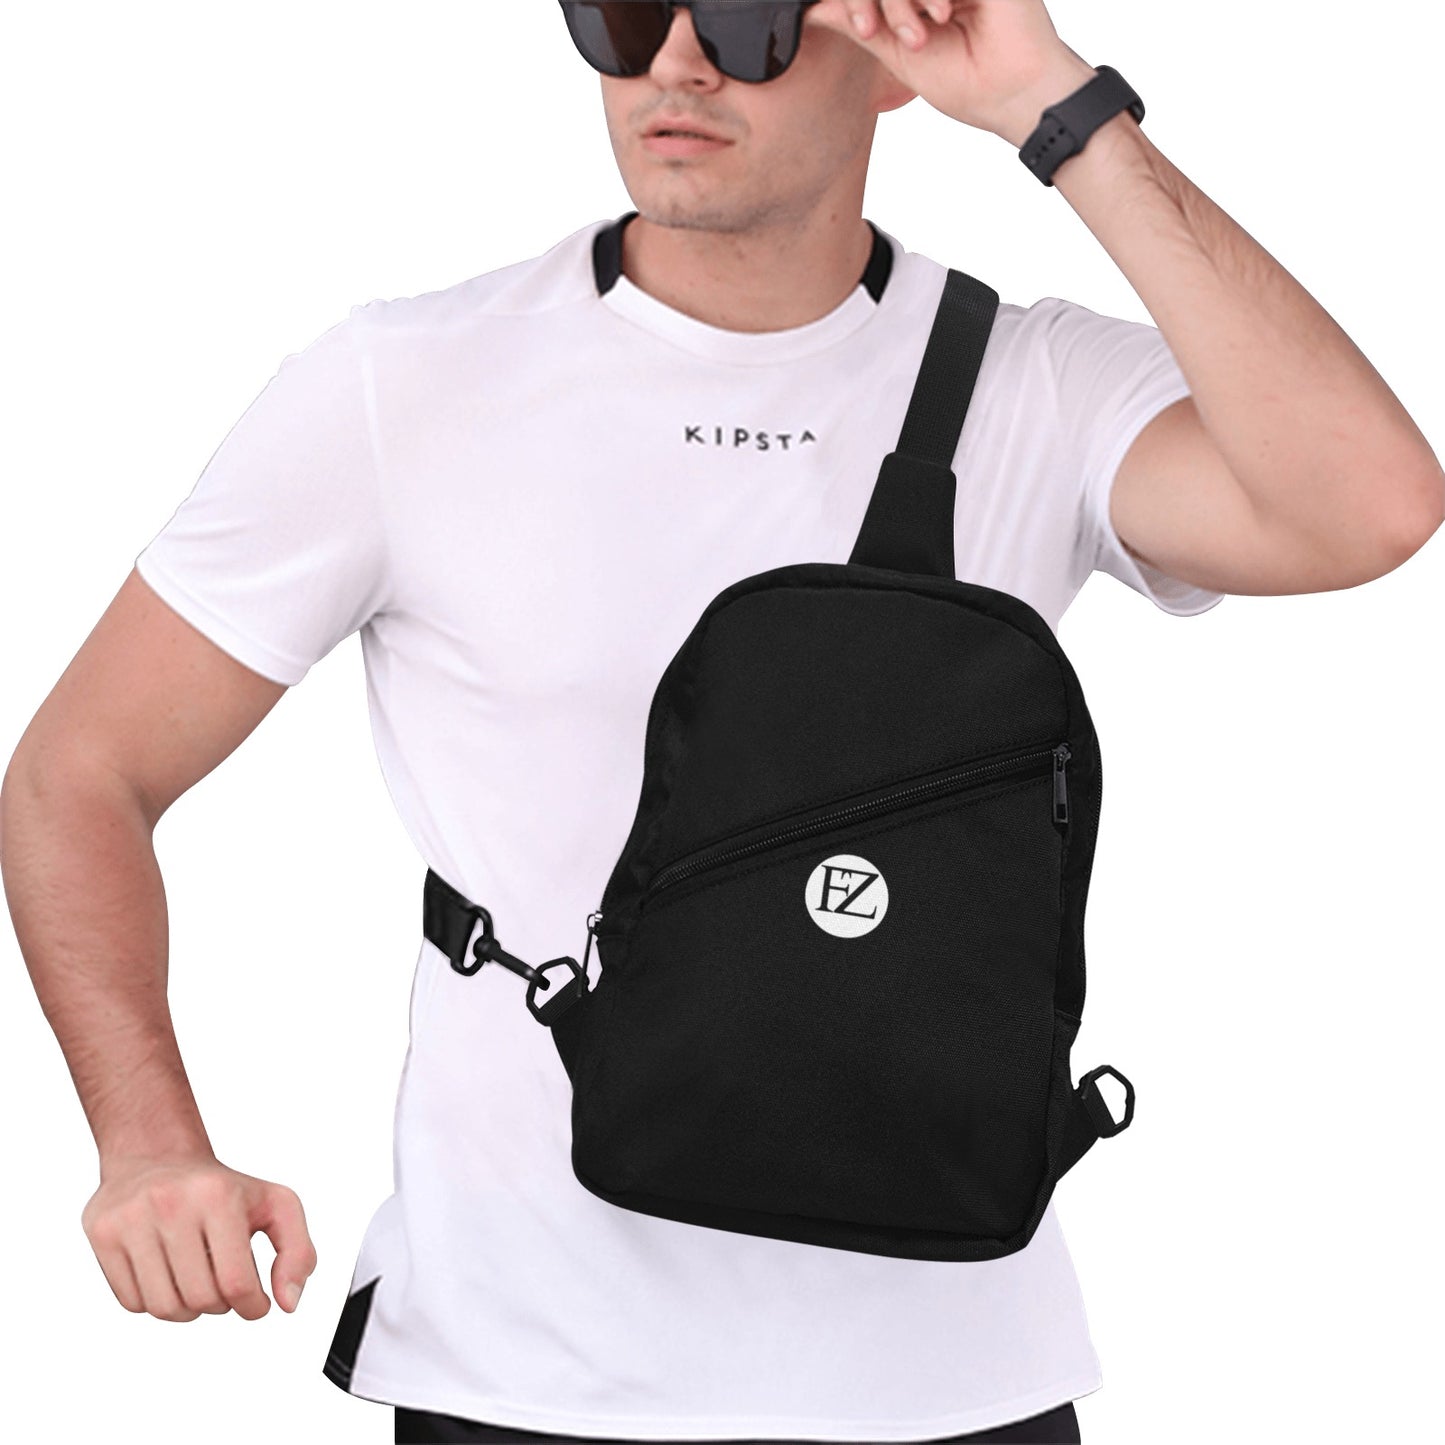 fz men's chest bag one size / fz chest bag-black men's chest bag (model1726)